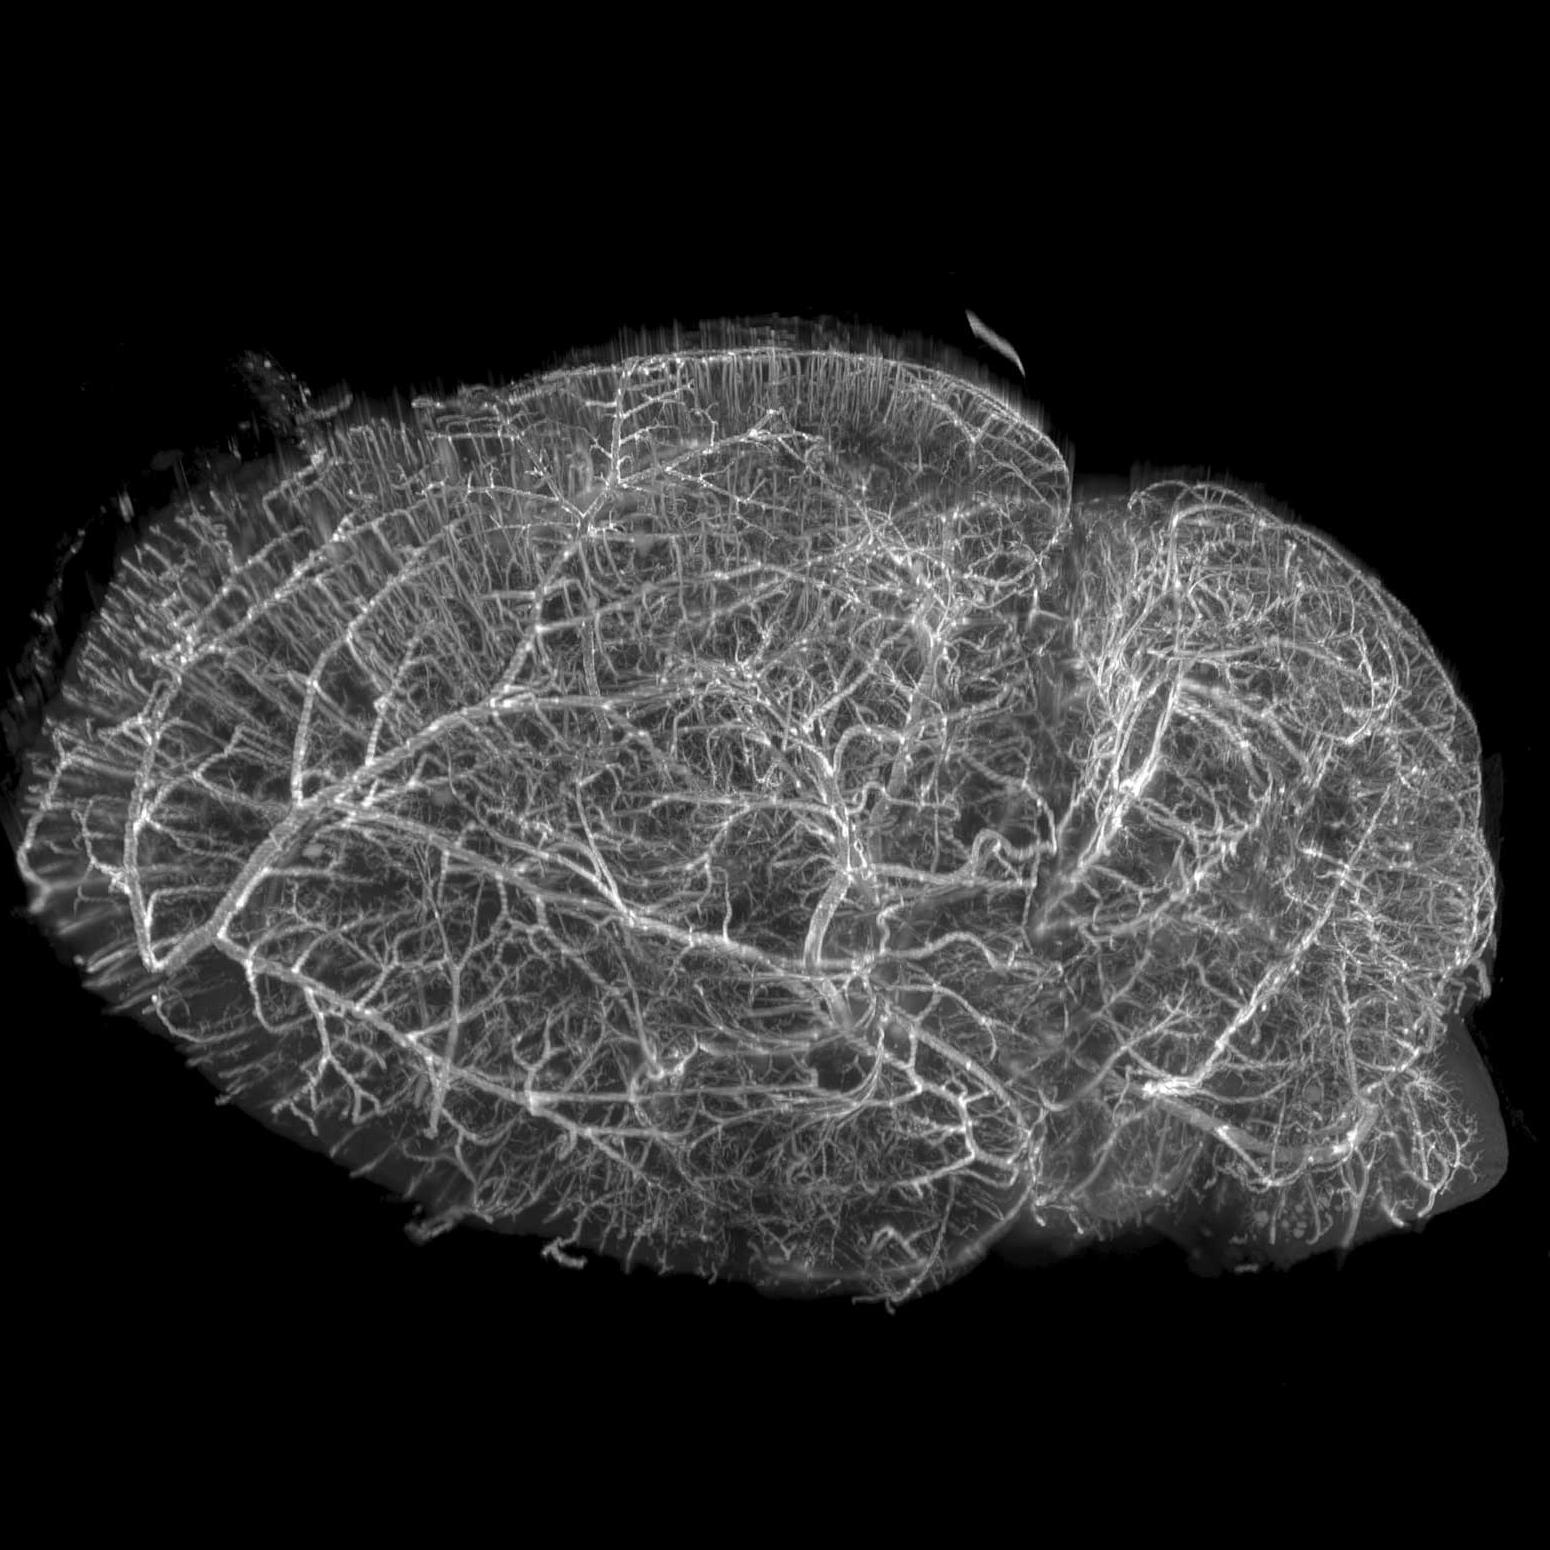 Cerebro de ratón teñido con un colorante lipídico para marcar las membranas de la vasculatura, limpiado con iDISCO+ y captado con microscopía basada en hoja de luz. Muestra cortesía de E. Diel, Universidad de Harvard, EE. UU.